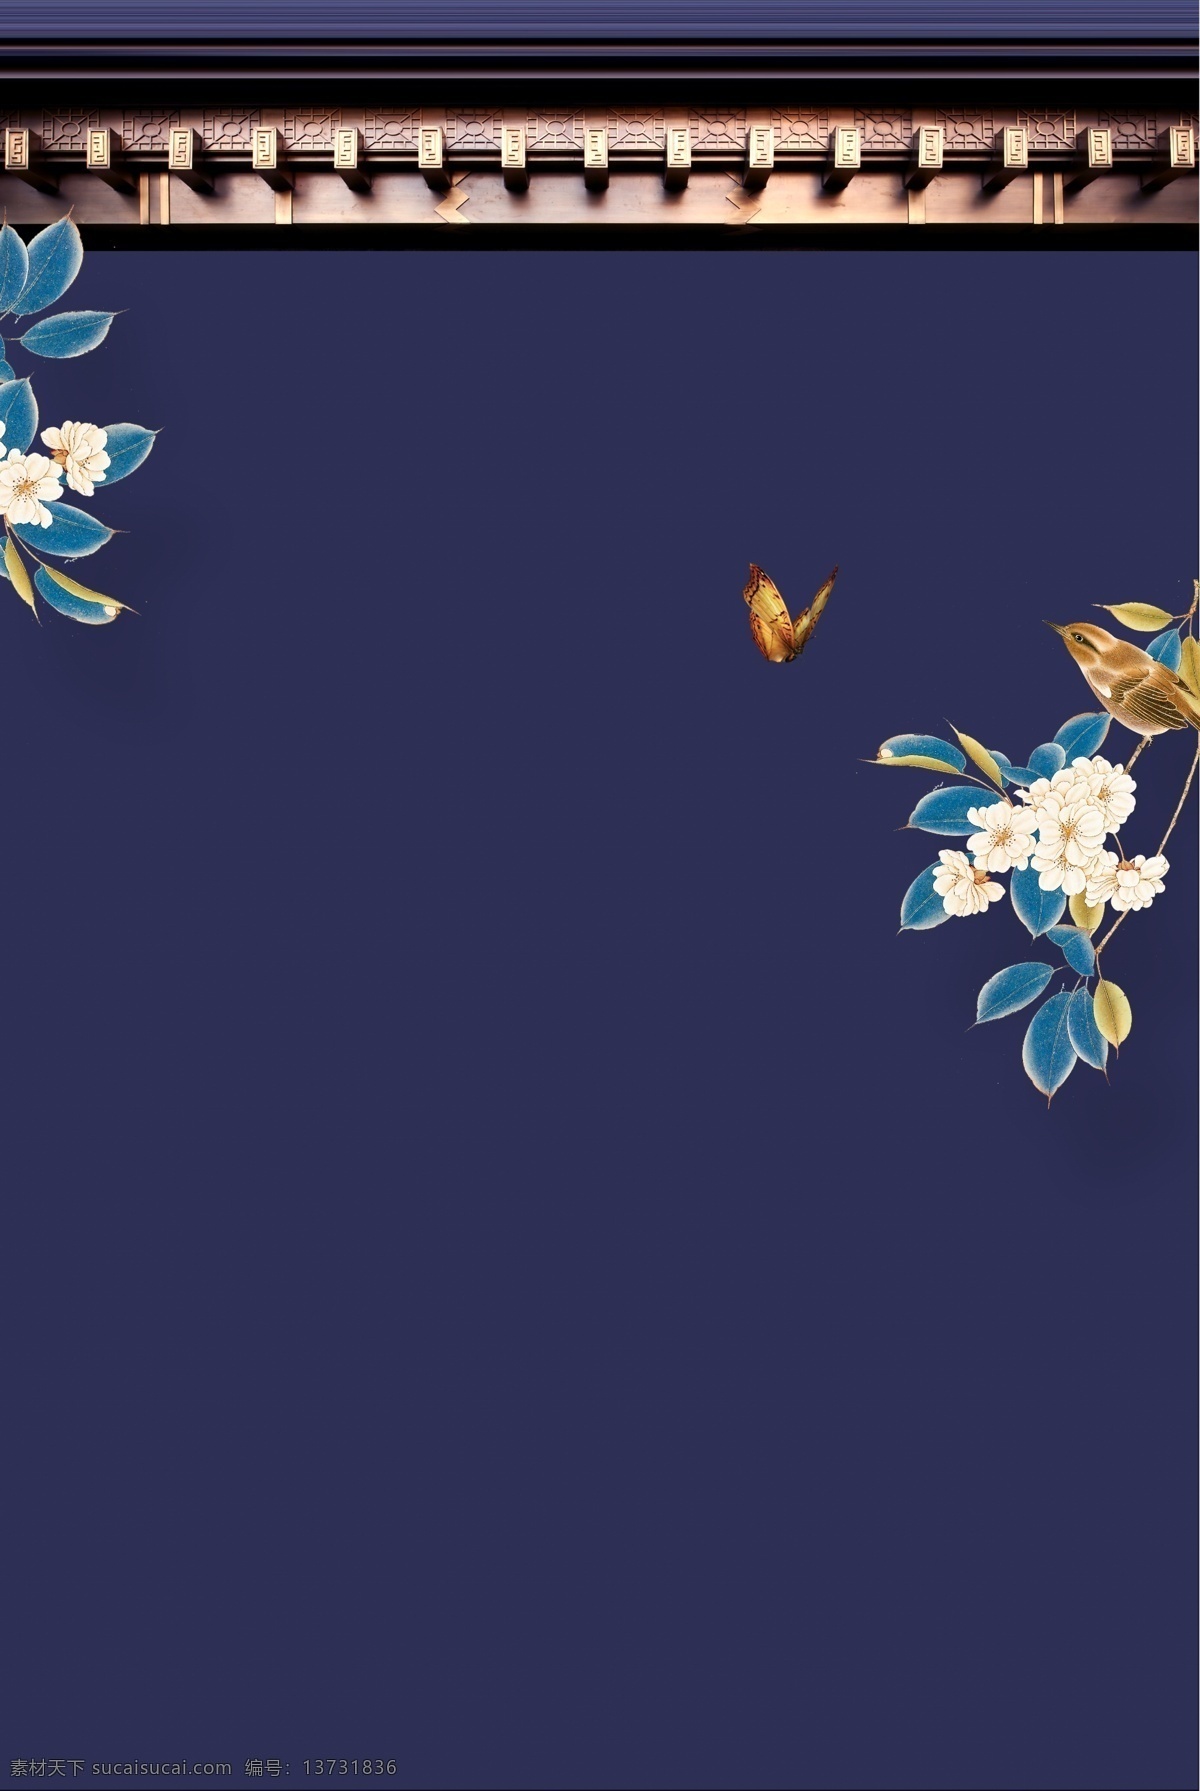 莫 兰迪 围墙 花朵 海报 莫兰迪 简约 高端 文艺 大气 蝴蝶